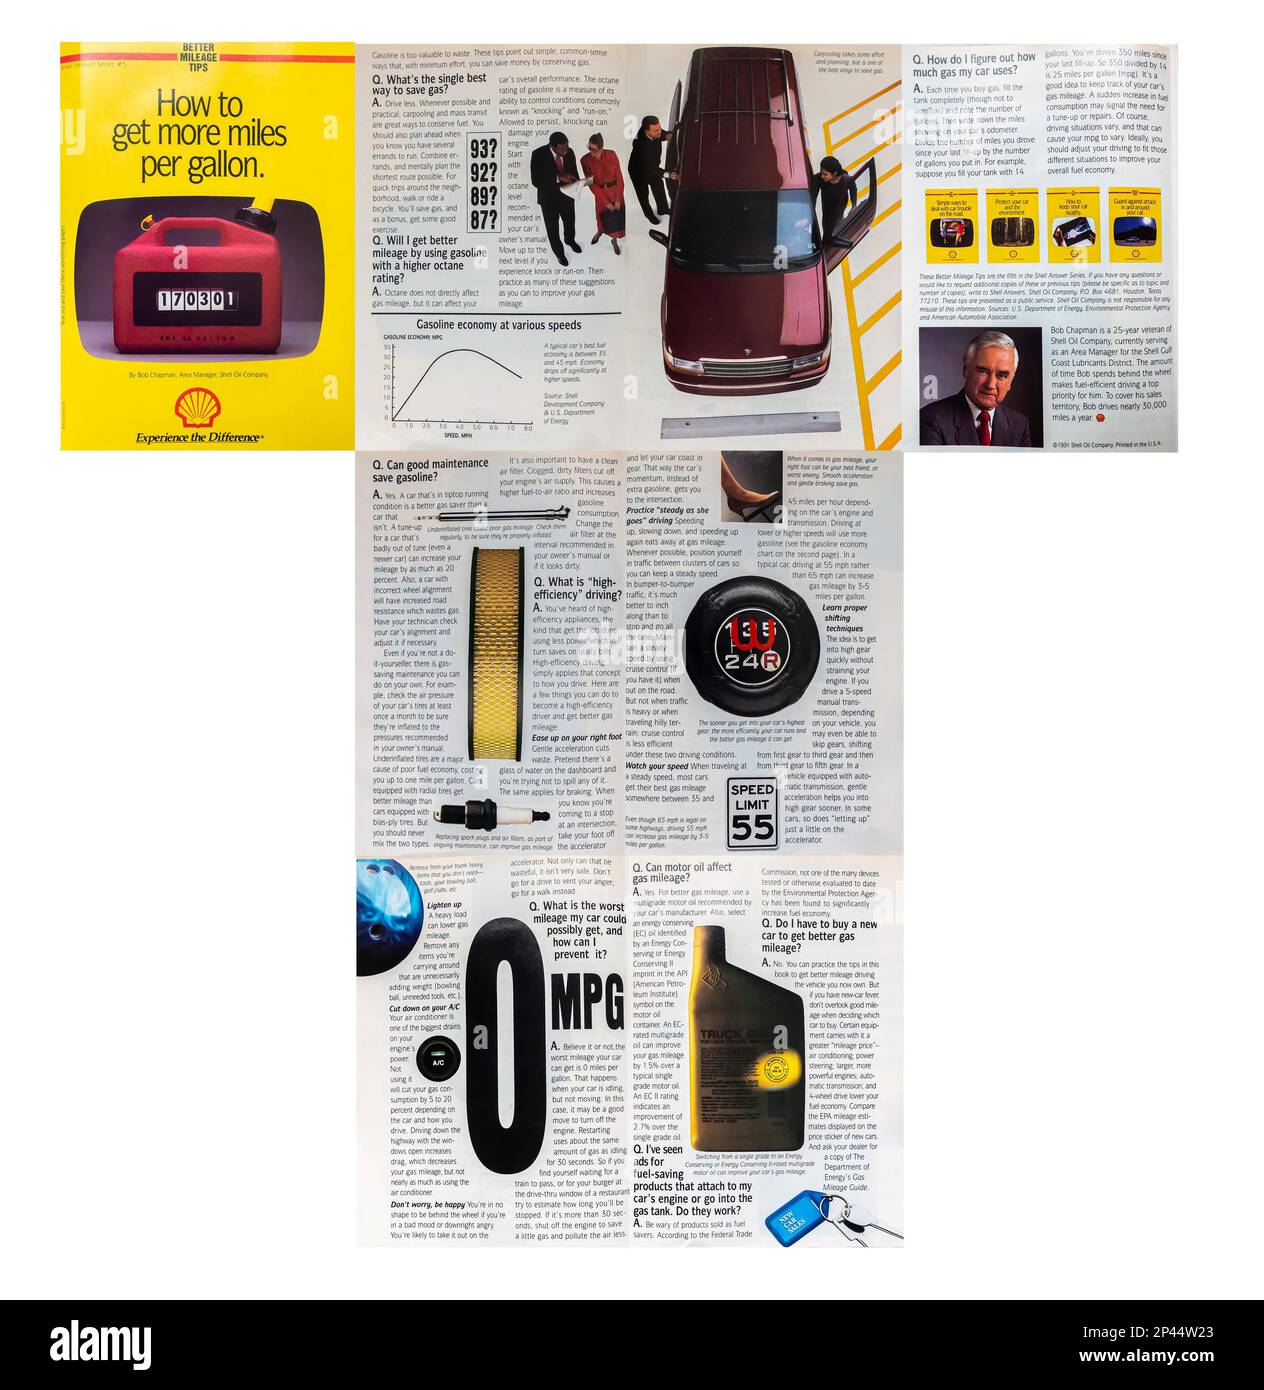 Shell oil - migliori suggerimenti per le miglia pubblicità al consumatore in forma di opuscolo all'interno di una rivista NatGeo. La versione completa con tutte le pagine. Aprile 1991 Foto Stock